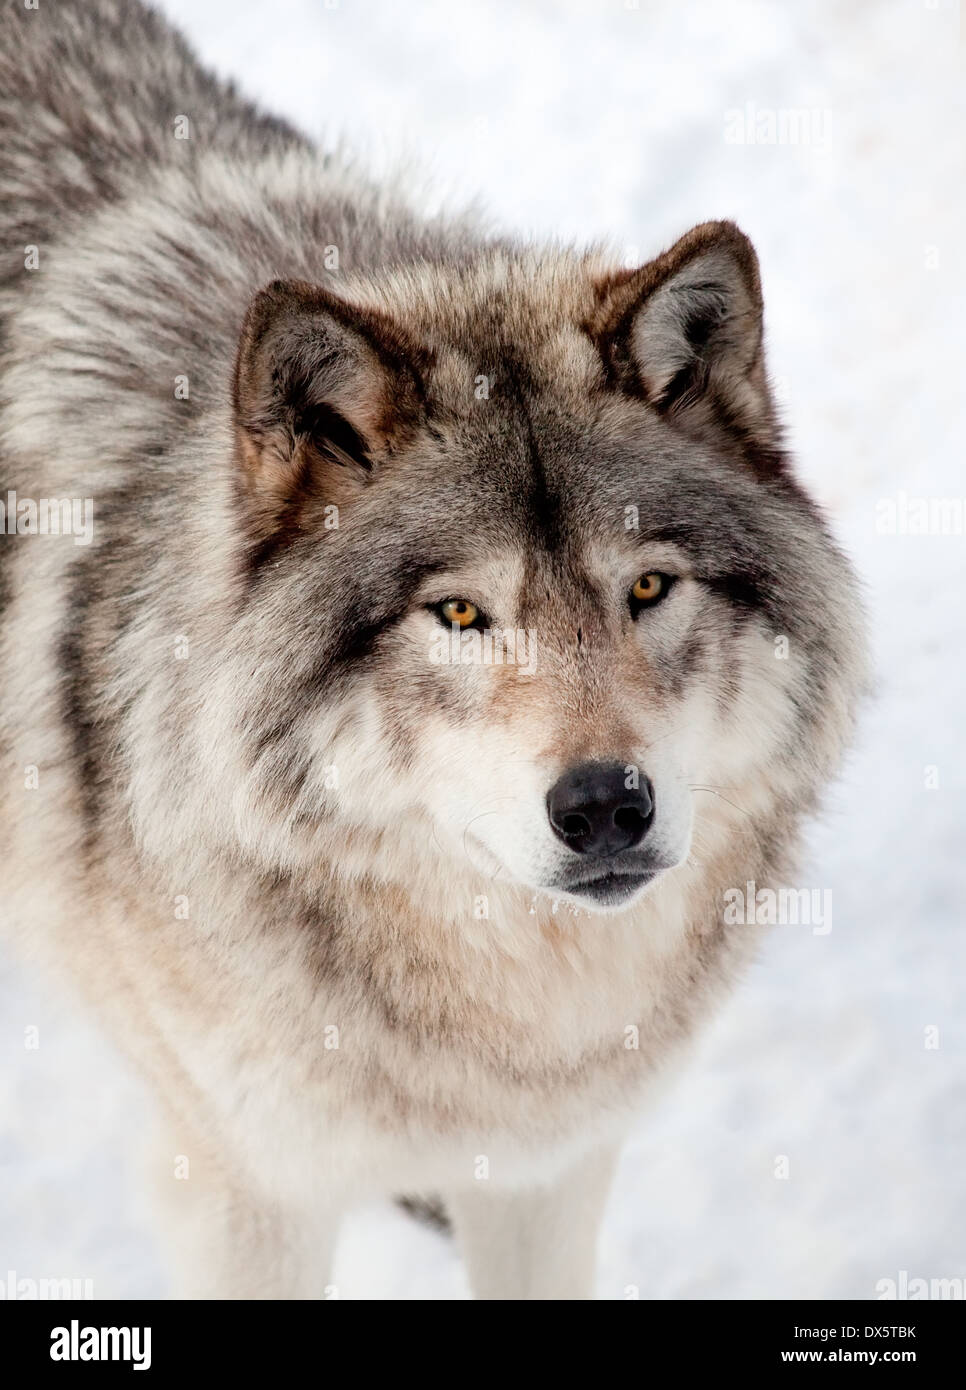 Primer plano de un lobo gris, en la nieve, mirando hacia la cámara. Foto de stock